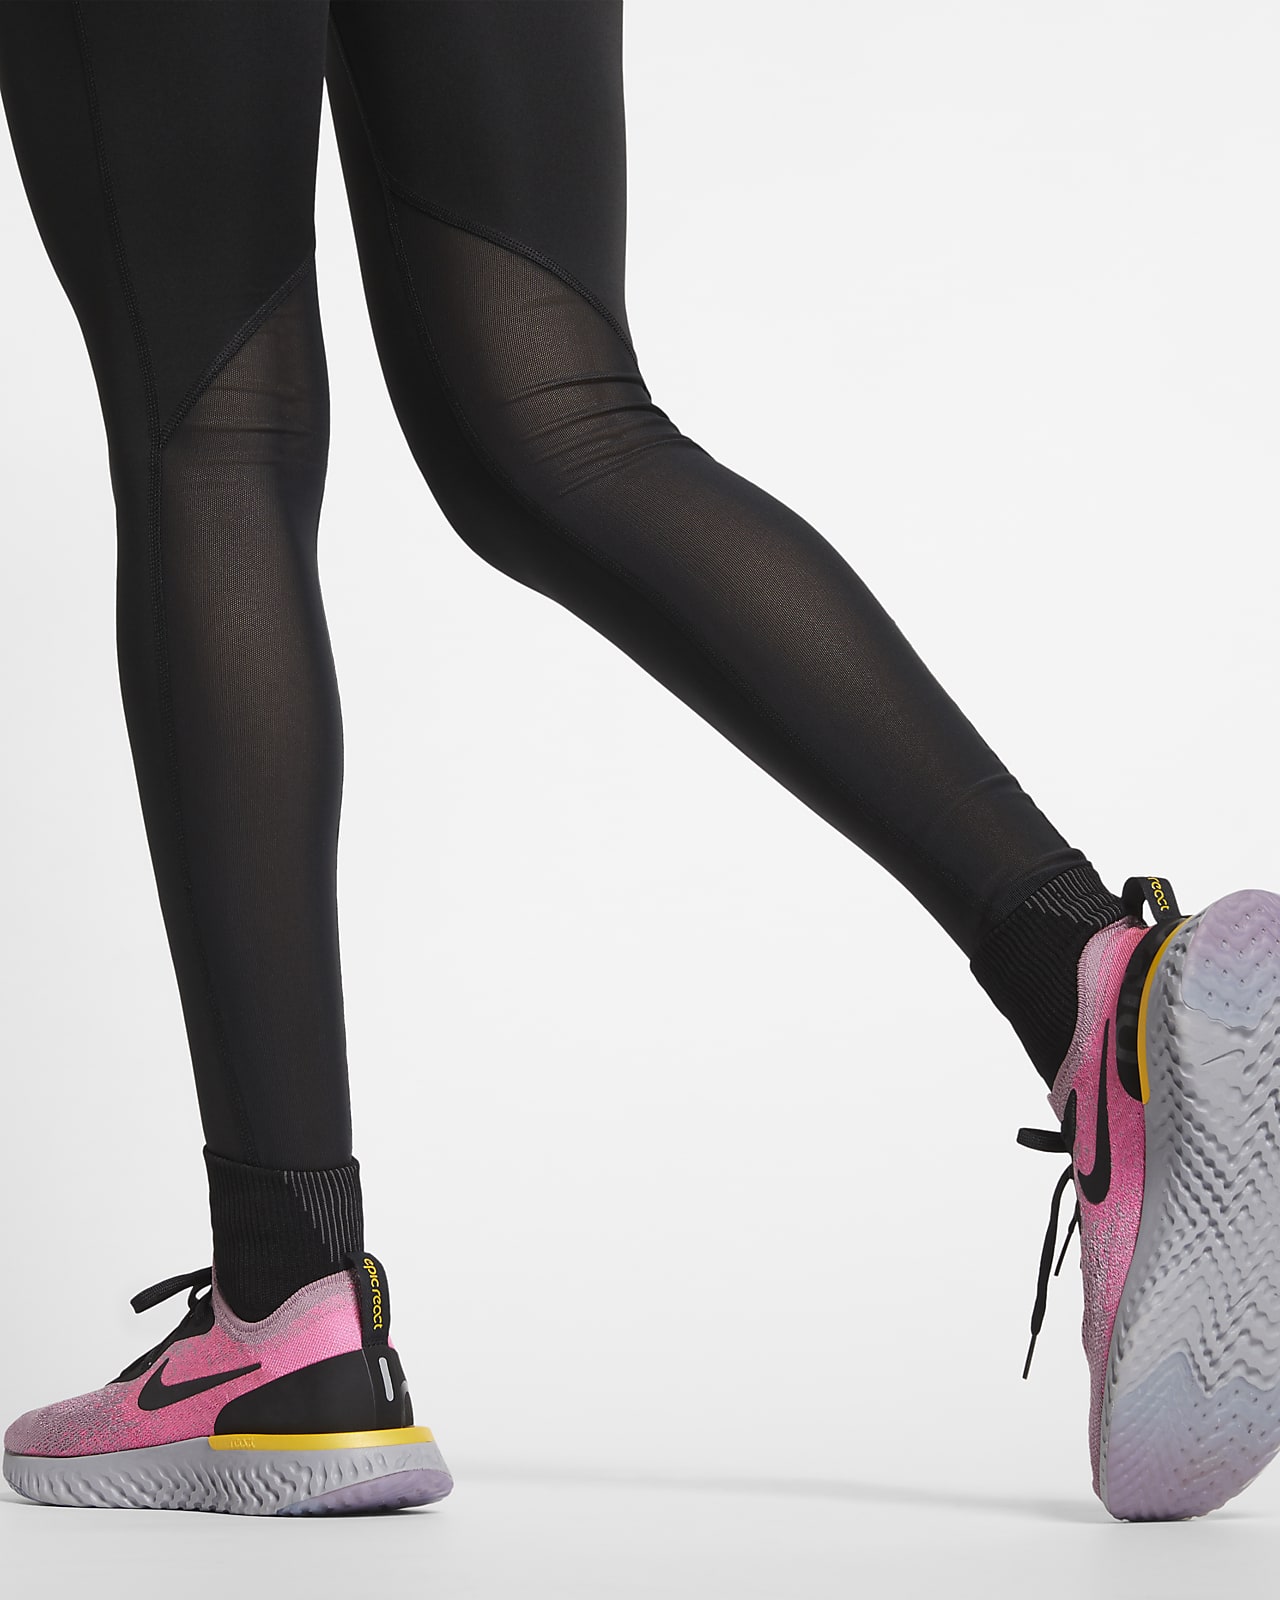 Legging de running pour femme. Nike CH